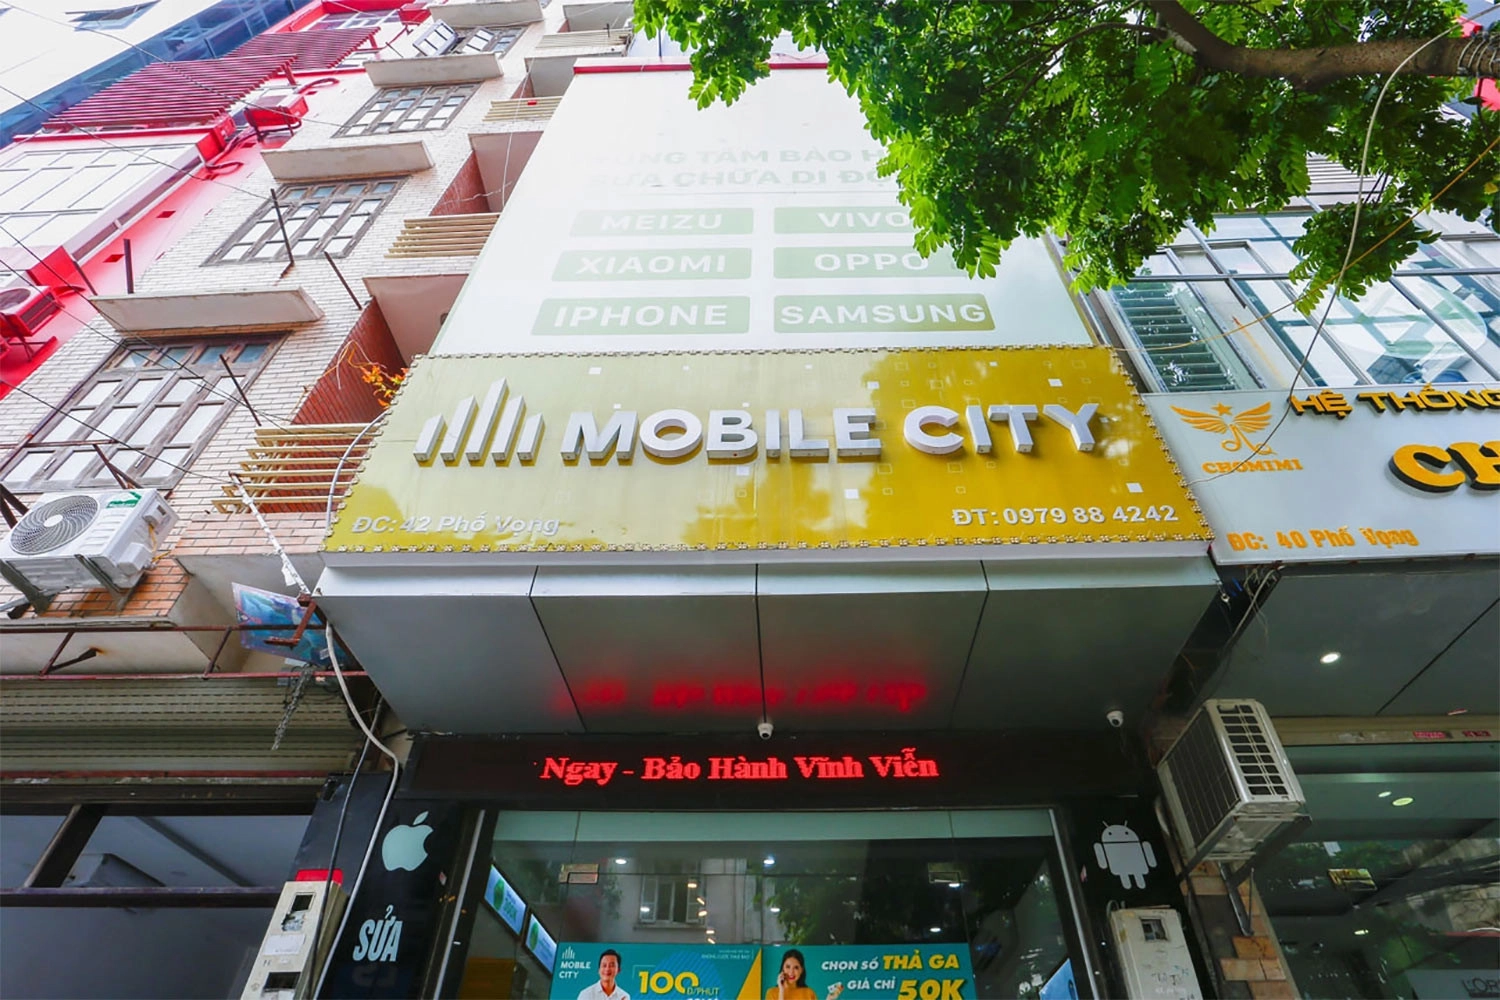 Thay Pin iPhone 7 Plus, Địa chỉ thay Pin iPhone 7 Plus tại Hà Nội, Đà Nẵng, Tp.HCM